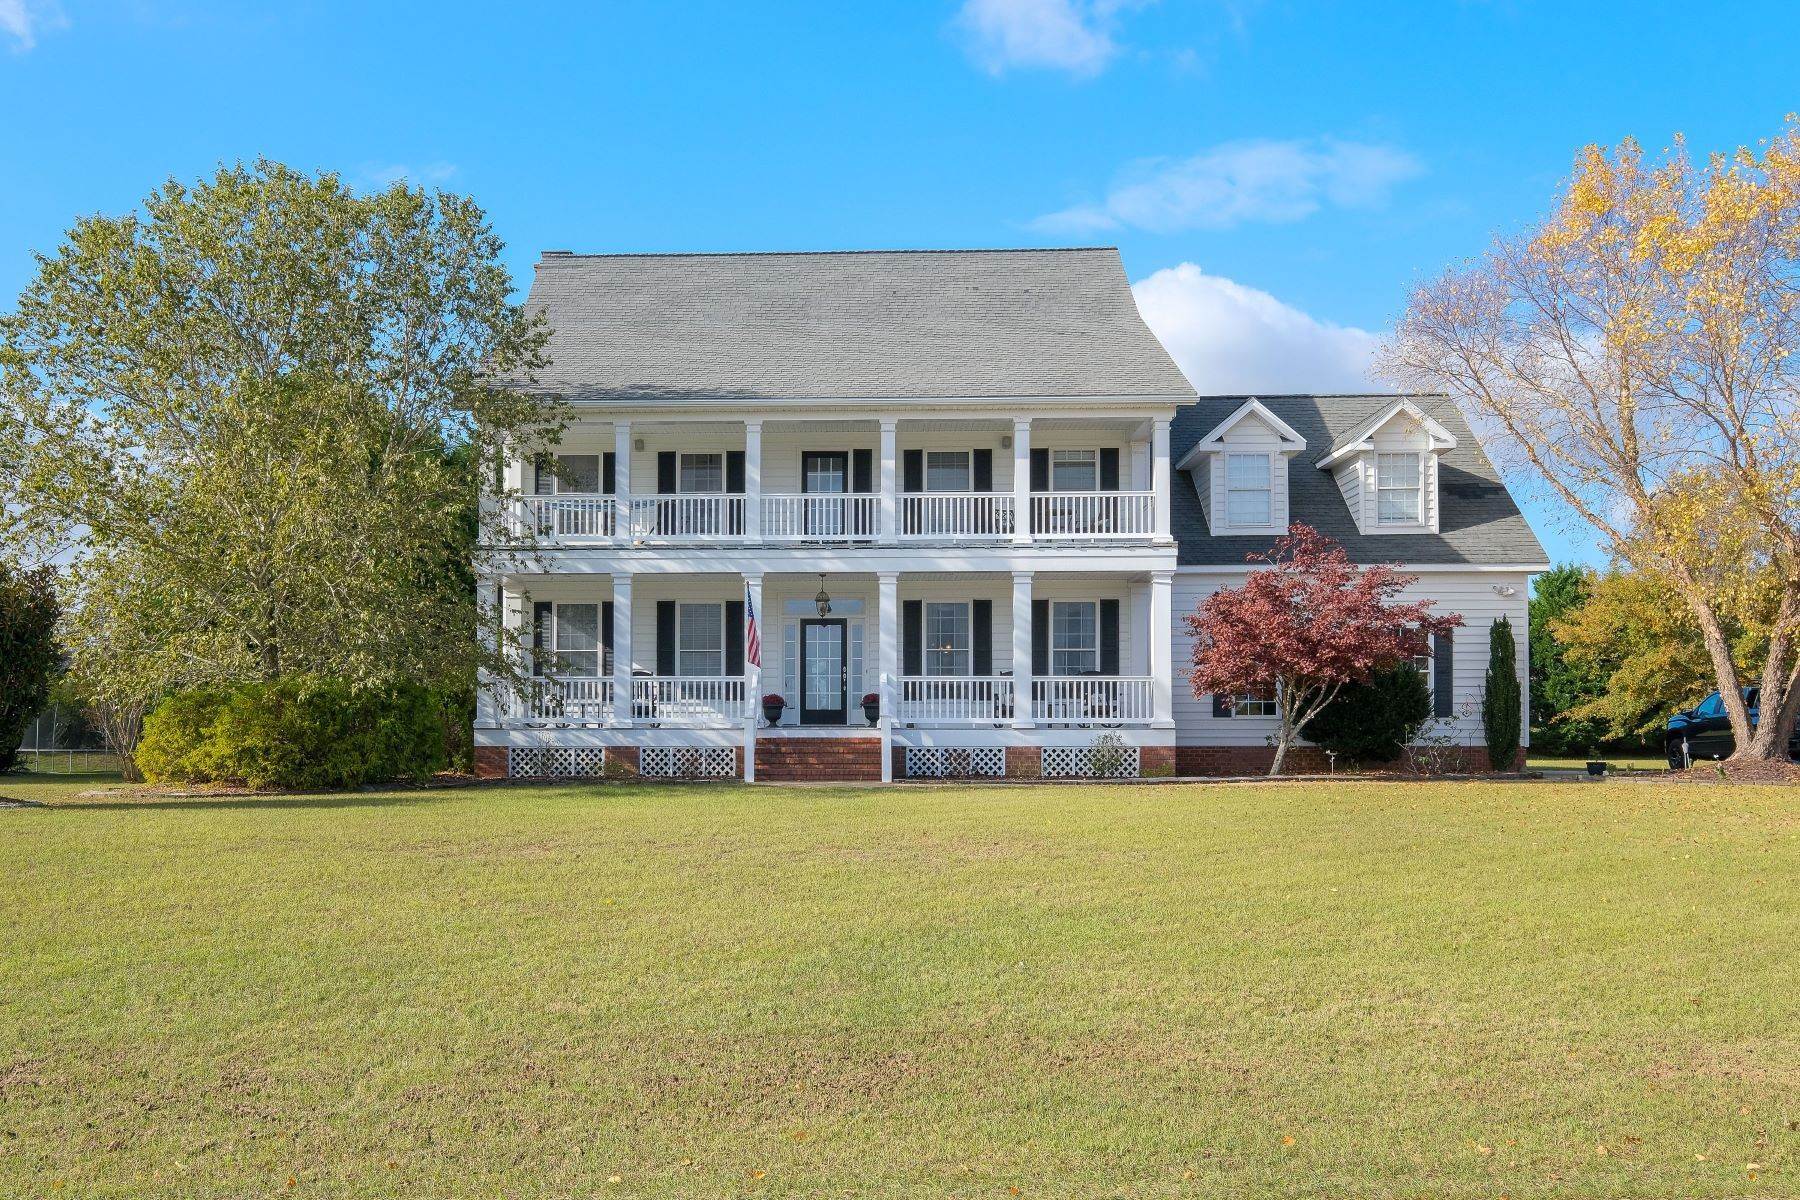 Property for Sale at SOUTHERN SURPRISE! 108 Schooner Landing Dr Edenton, North Carolina 27932 United States